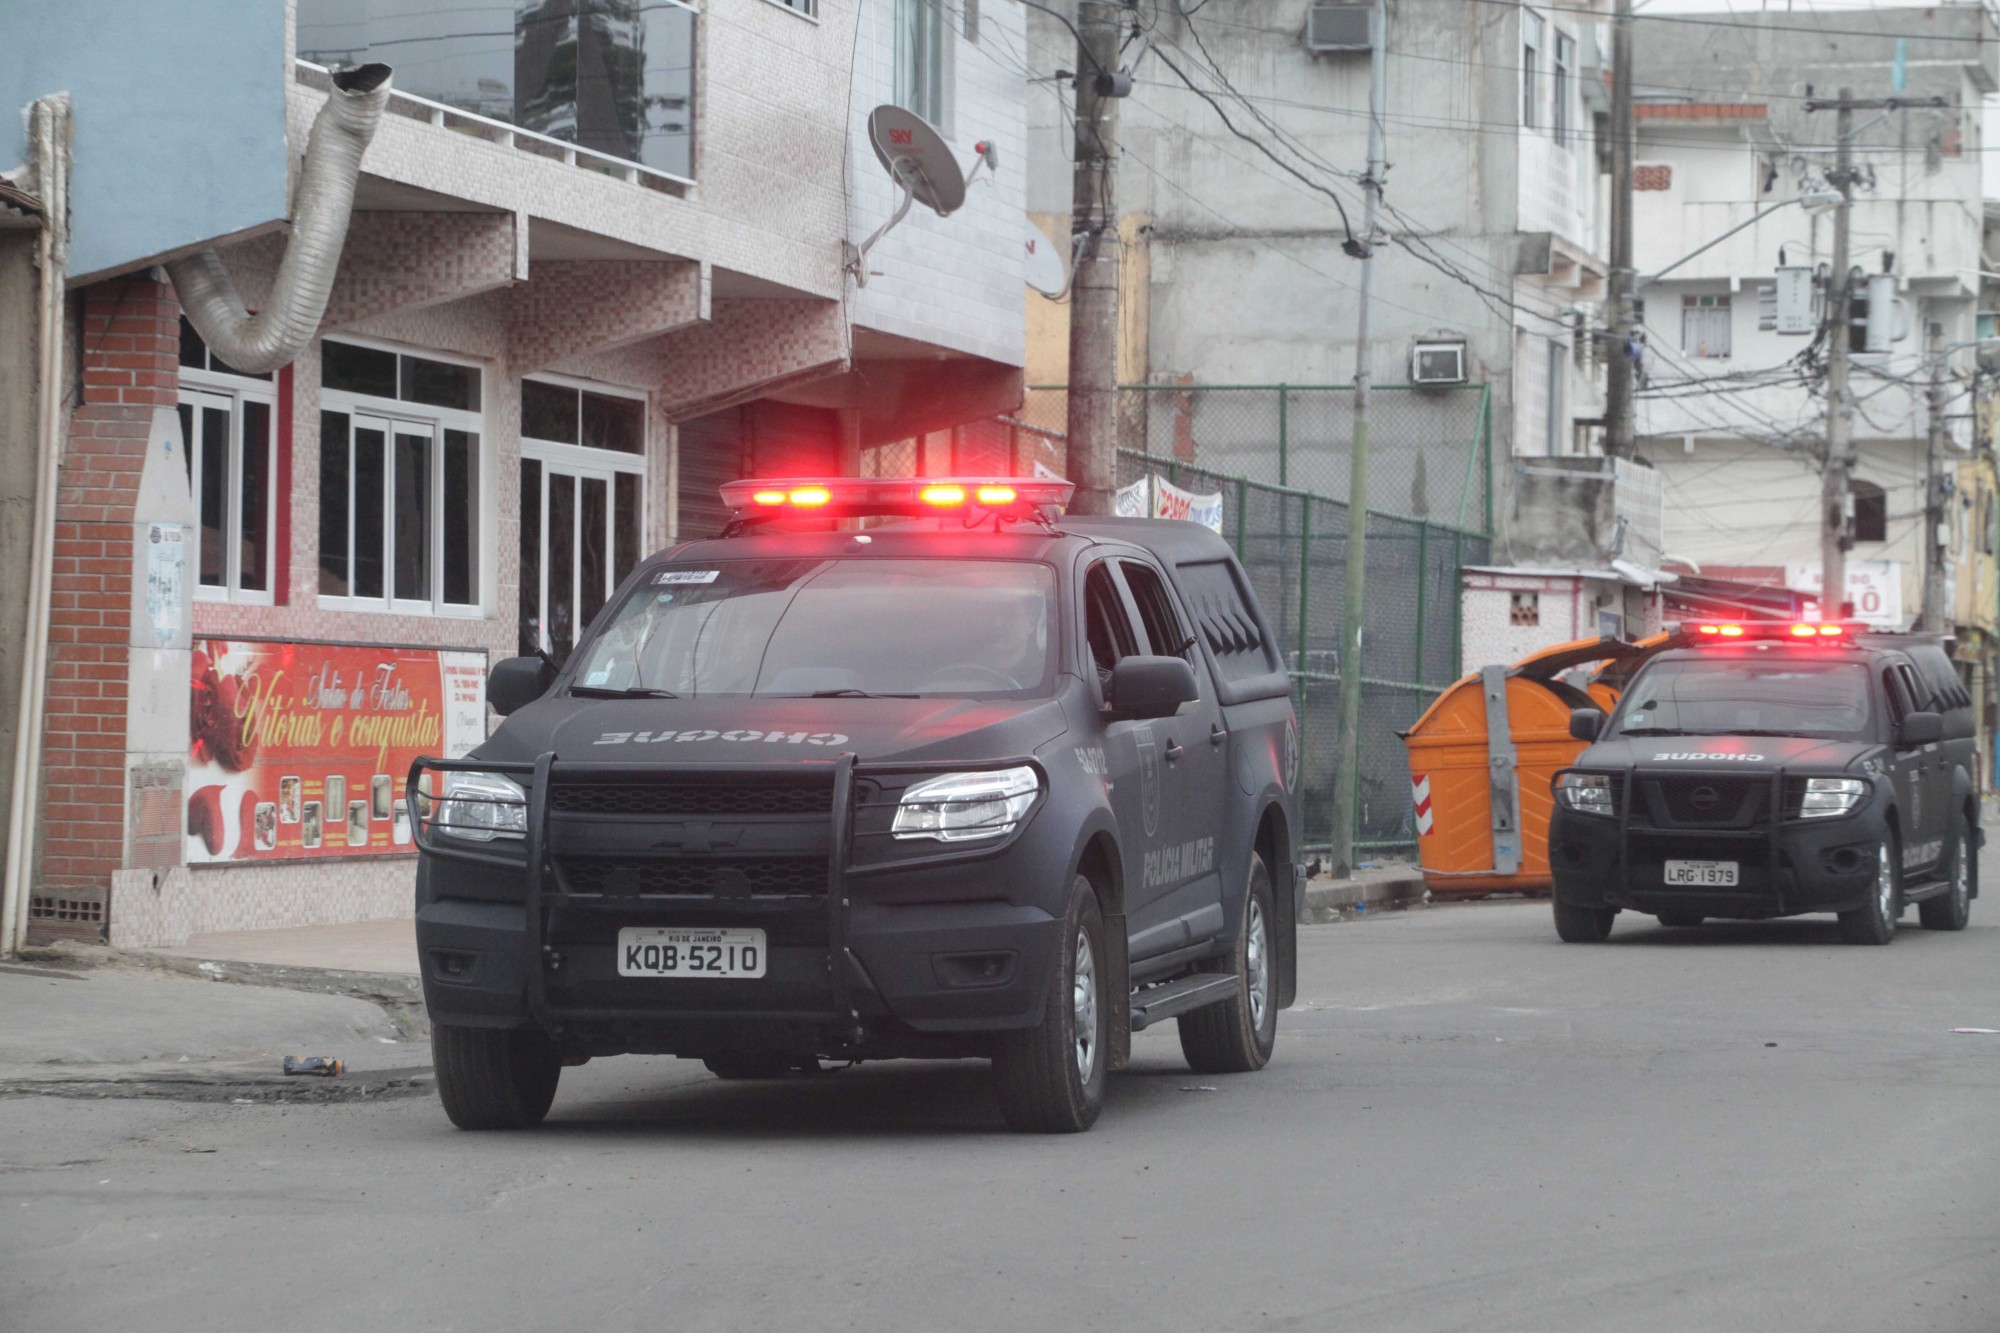 Military Police to Take Over in Rio’s Complexo da Maré